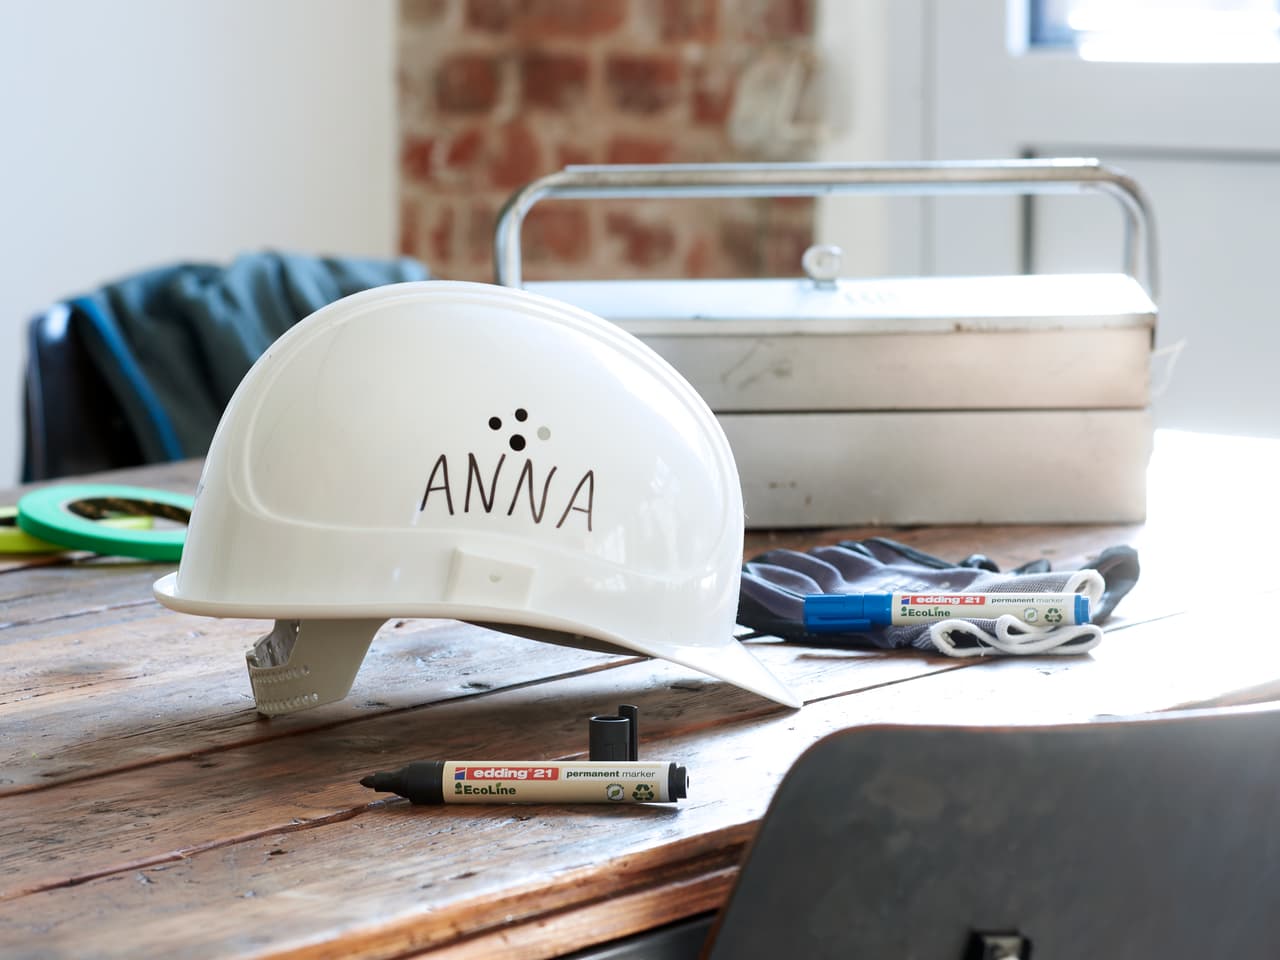 Ein weißer Schutzhelm mit dem Namen „Anna“, aufgedruckt mit einem edding 21 EcoLine Permanentmarker, platziert auf einem Holztisch neben einem Werkzeugkasten und Bauwerkzeugen in einem gut beleuchteten Behälter